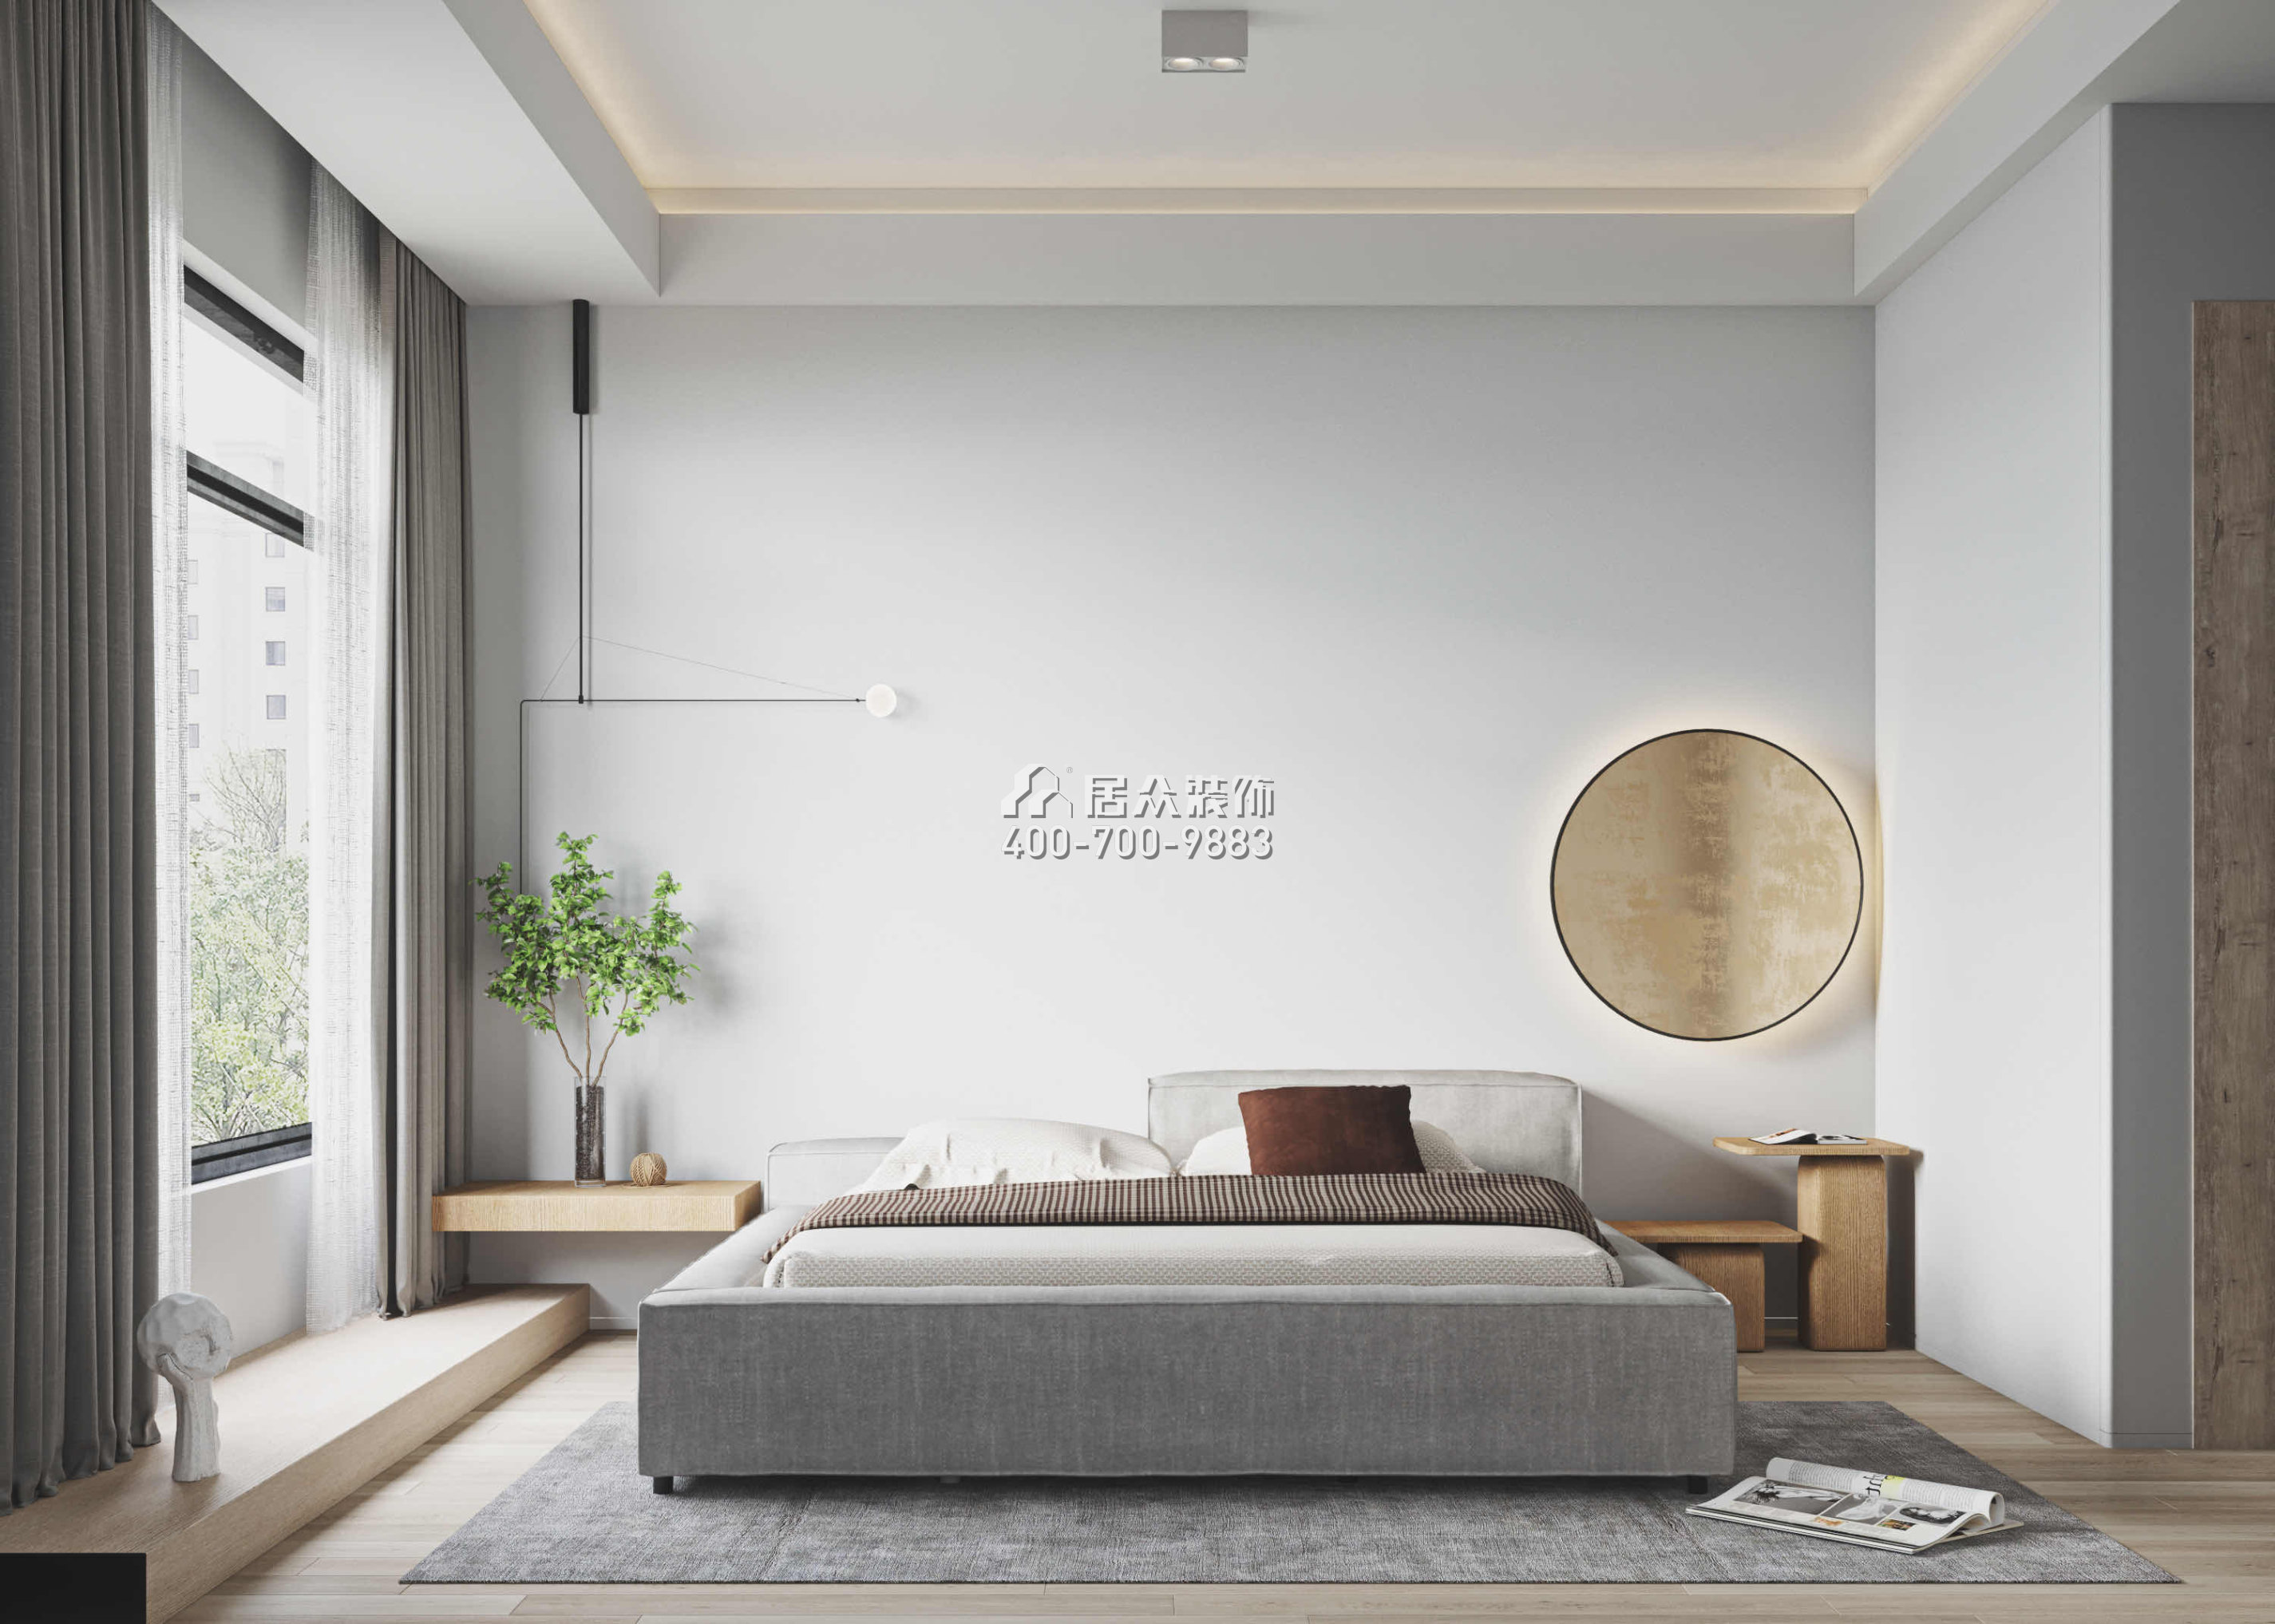 翠湖香山别苑320平方米现代简约风格复式户型卧室装修效果图